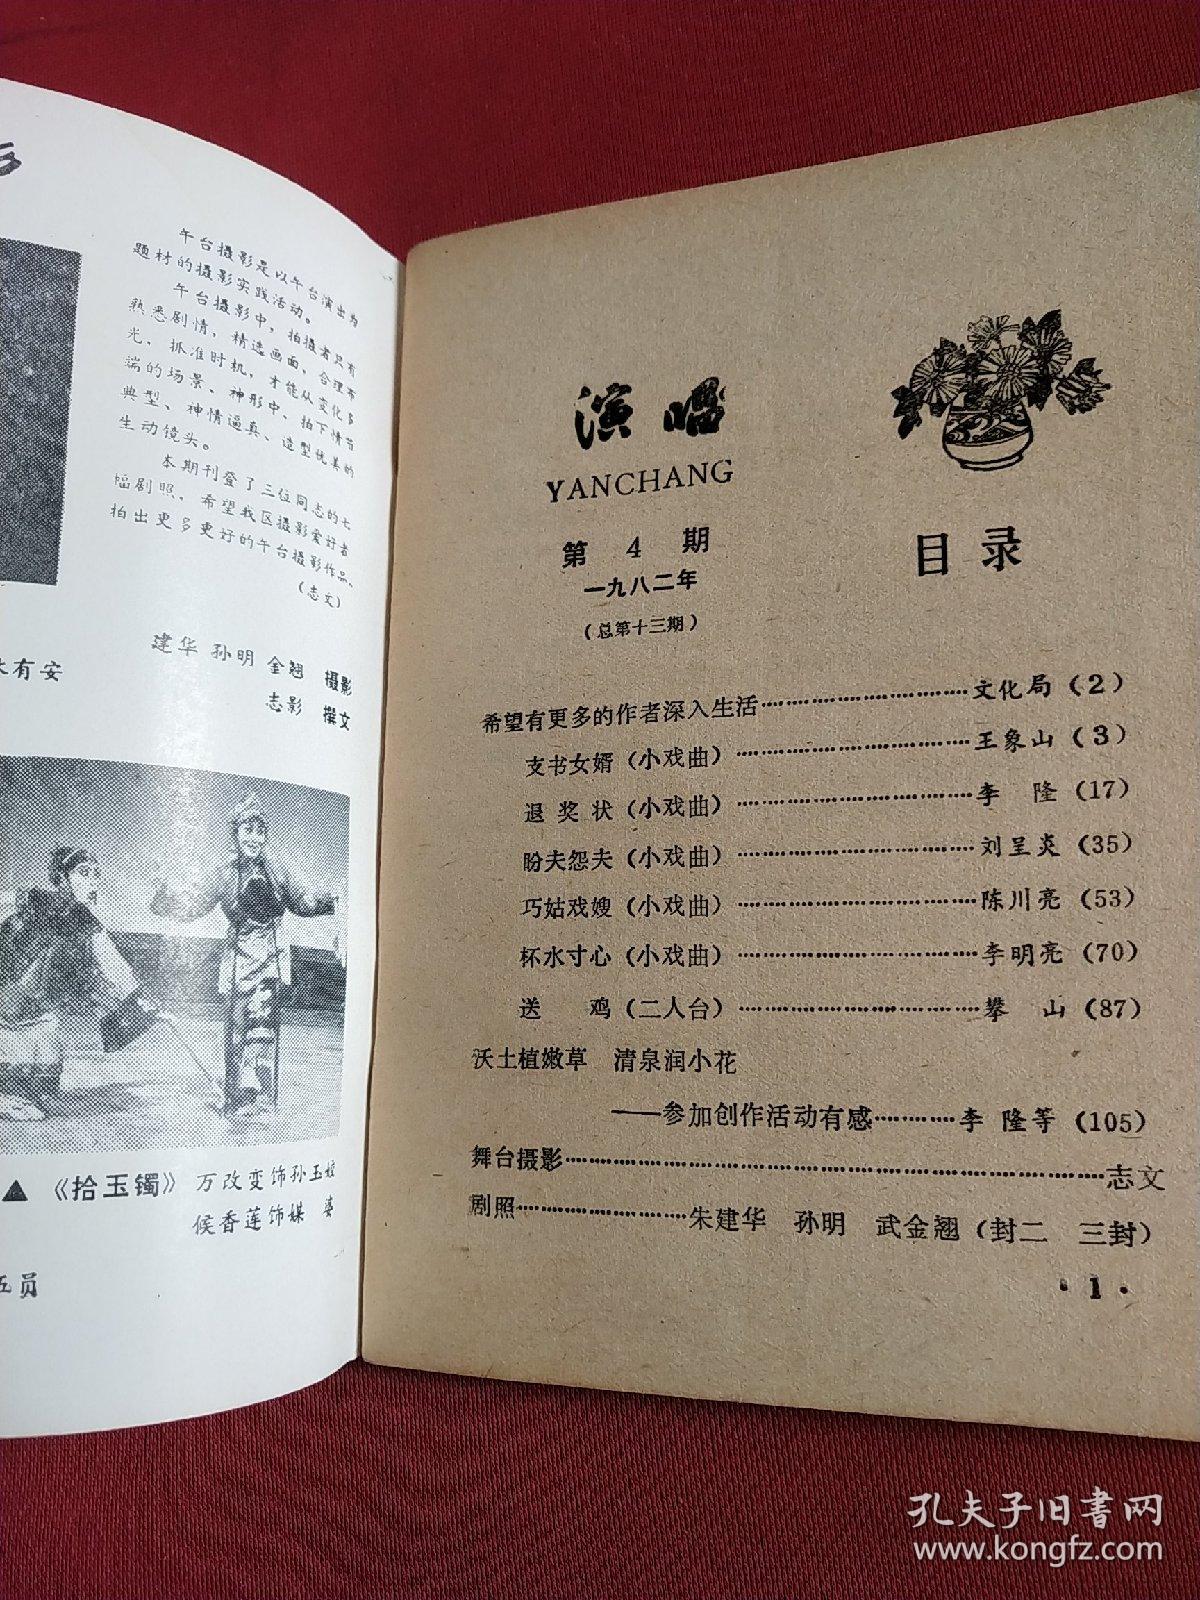 忻县地区戏曲剧本专辑  演唱1982